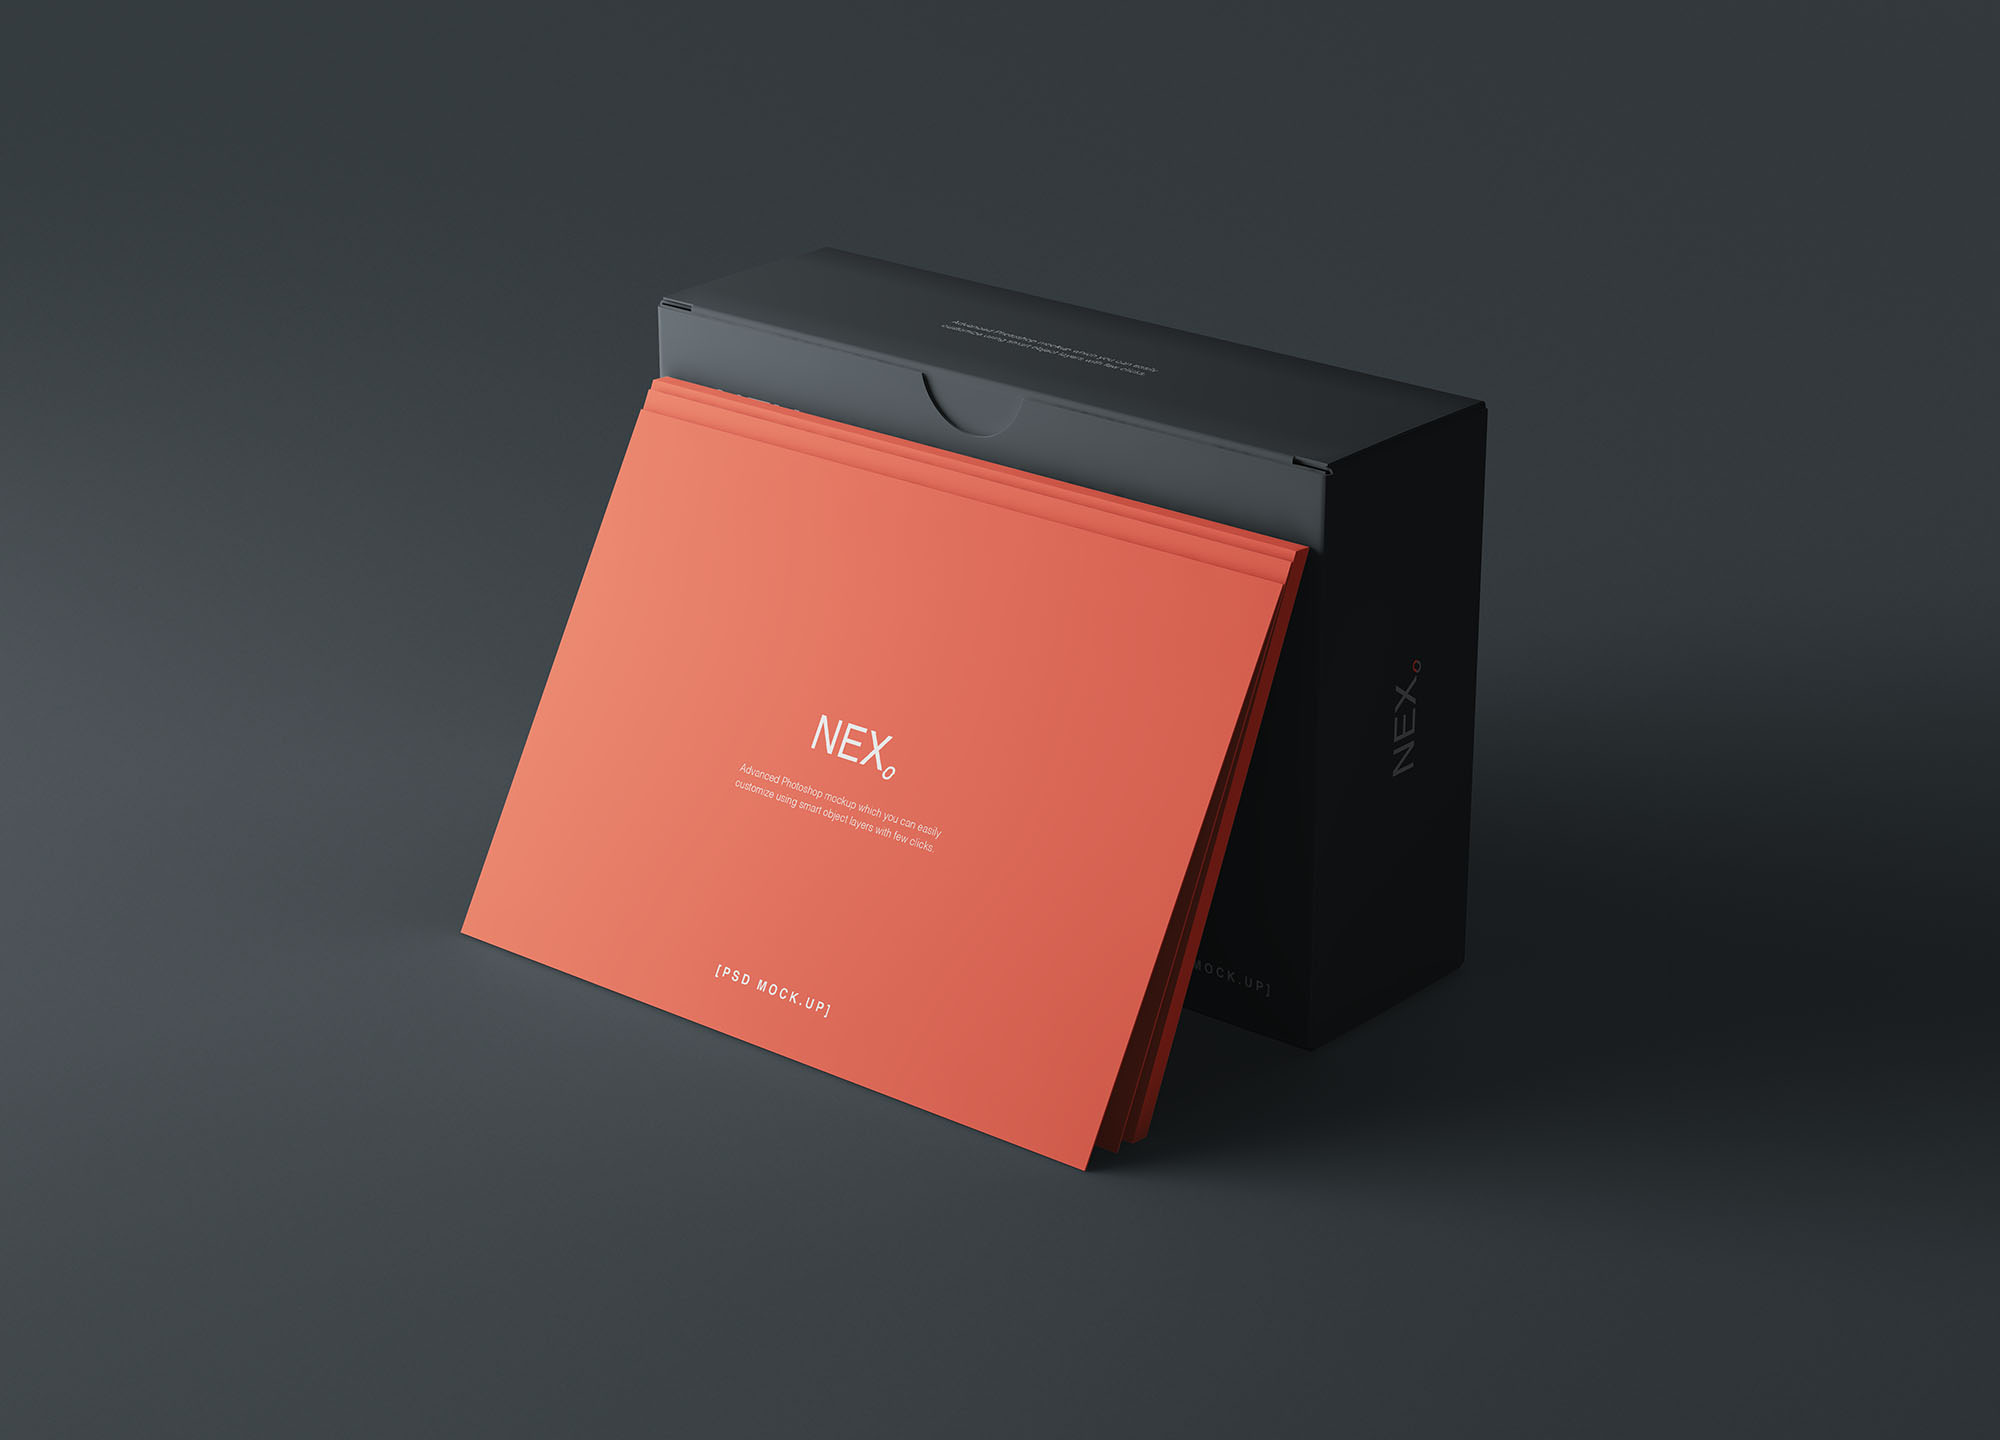 卡片包装盒外观设计效果图蚂蚁素材精选 Card Box Mockup插图(3)